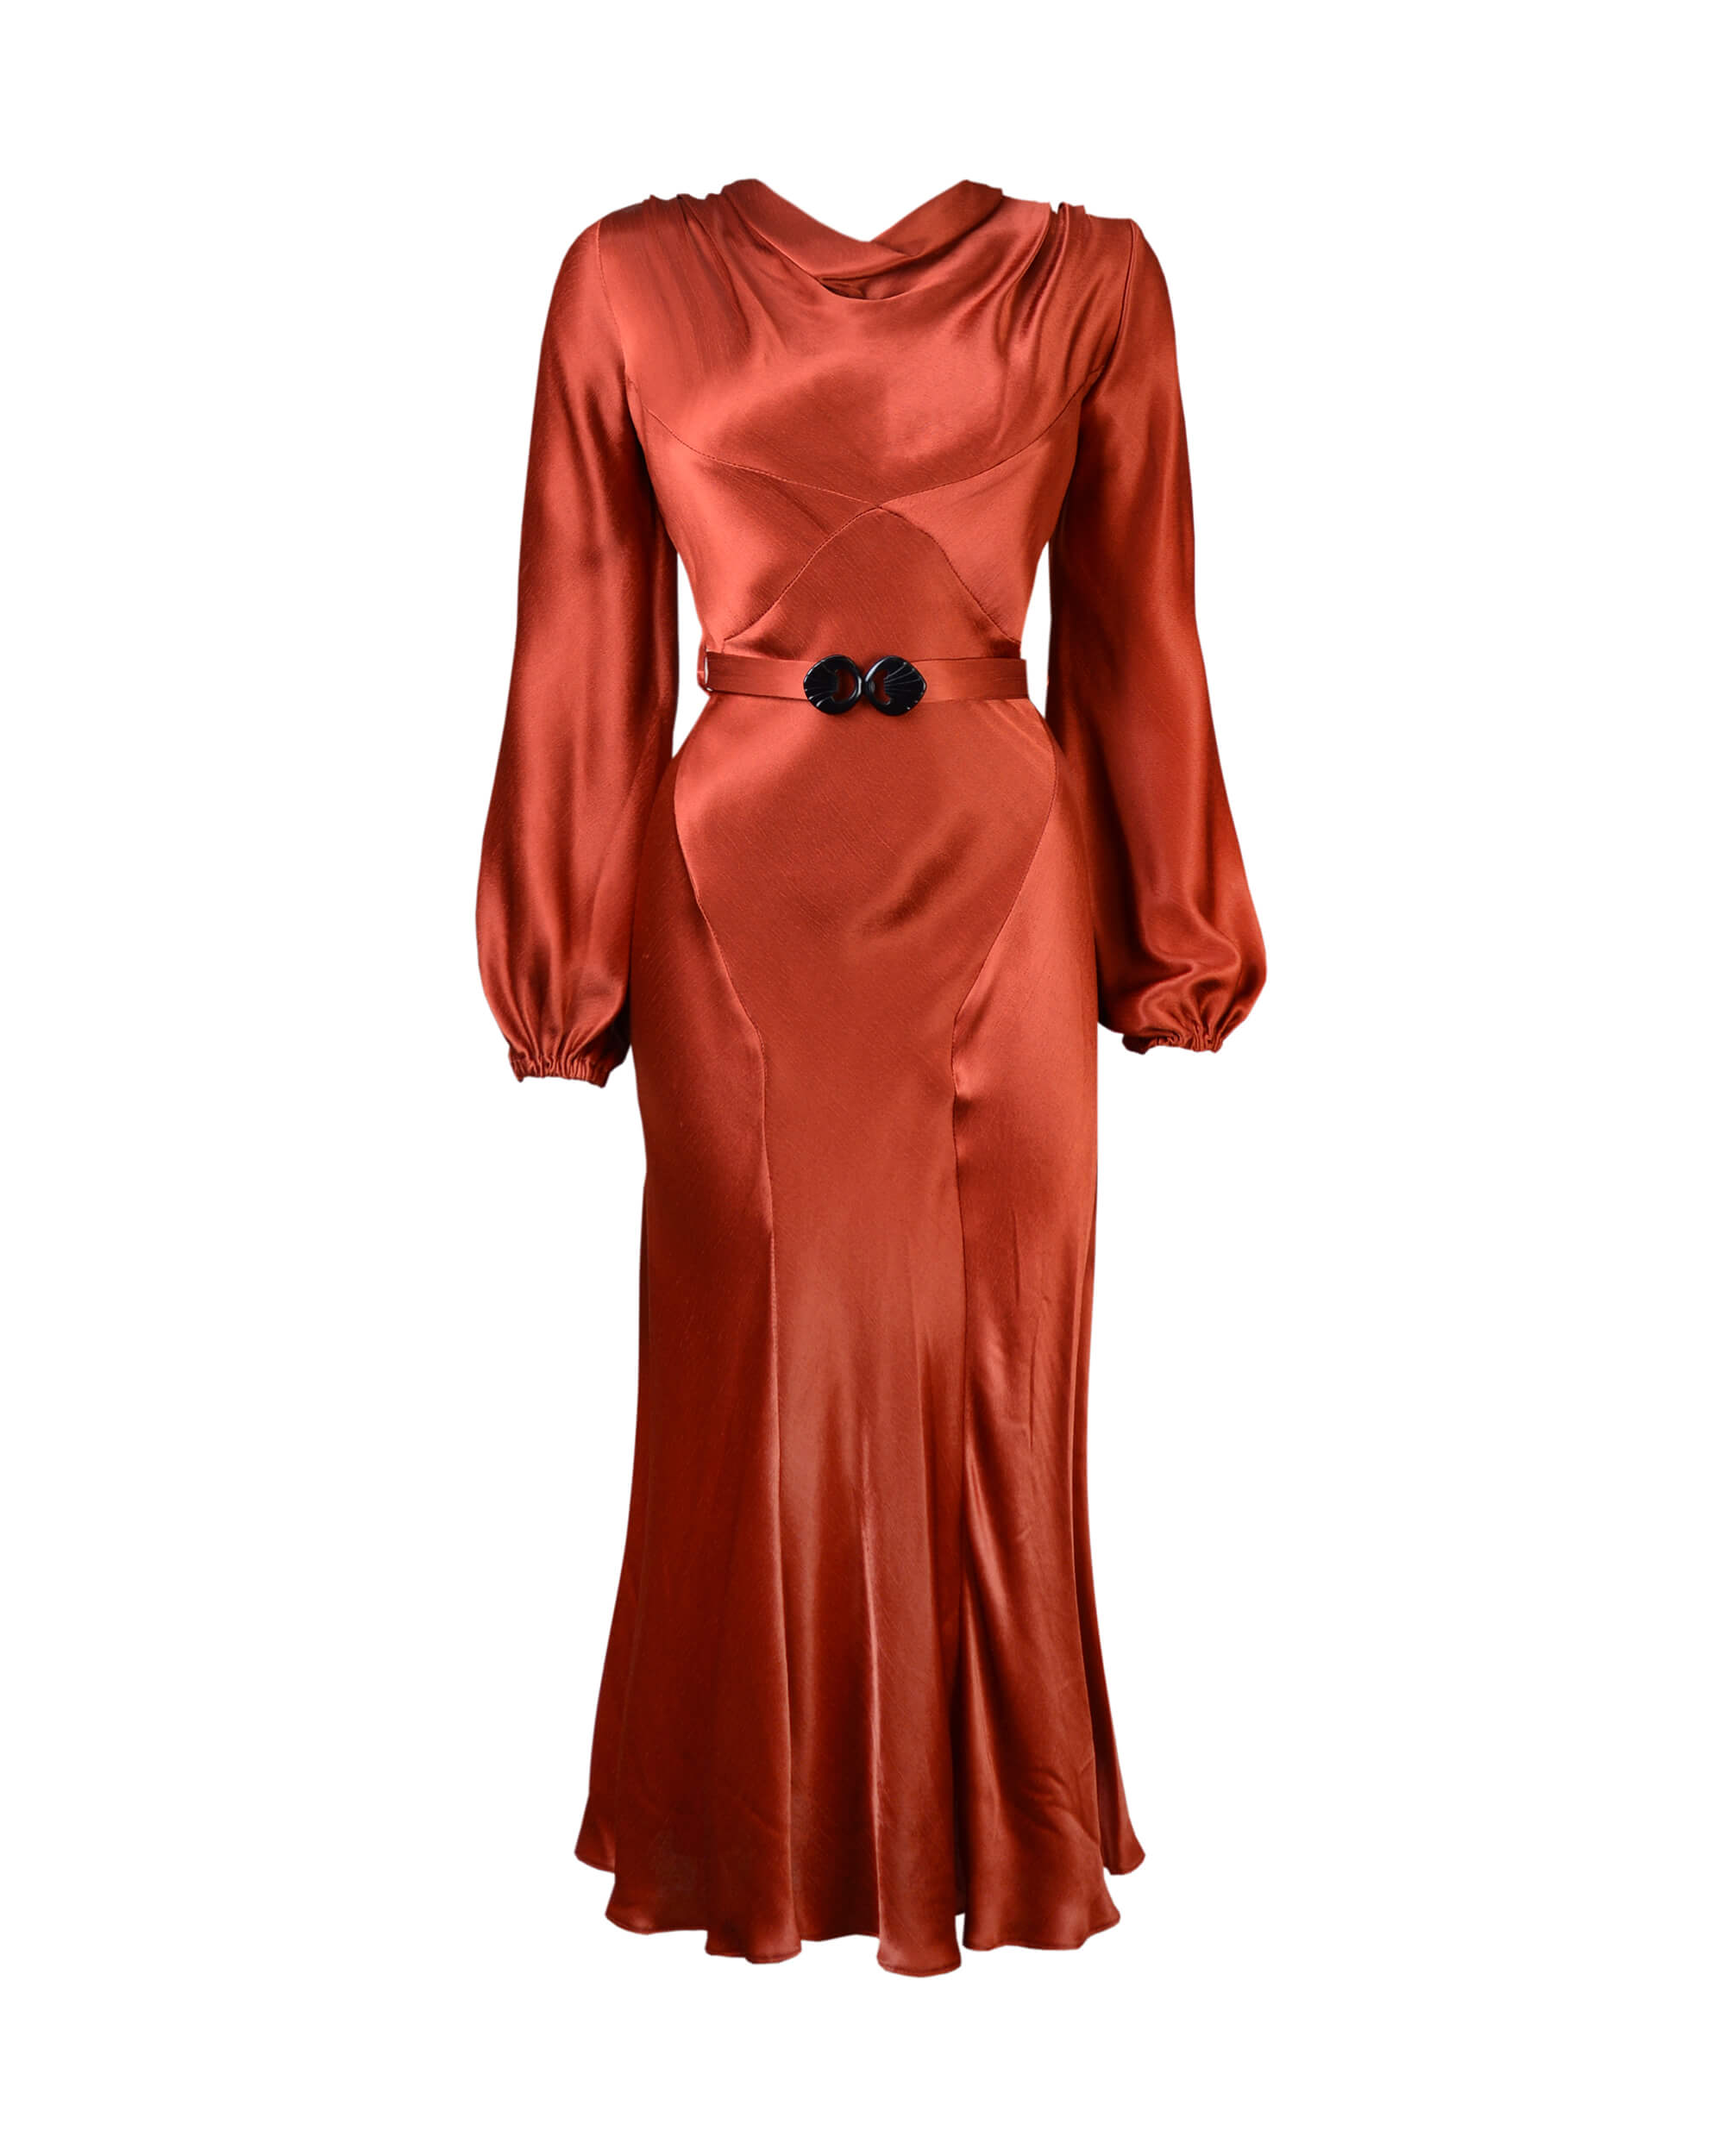 30s Joanie Bias Cut Dress - Rust Satin